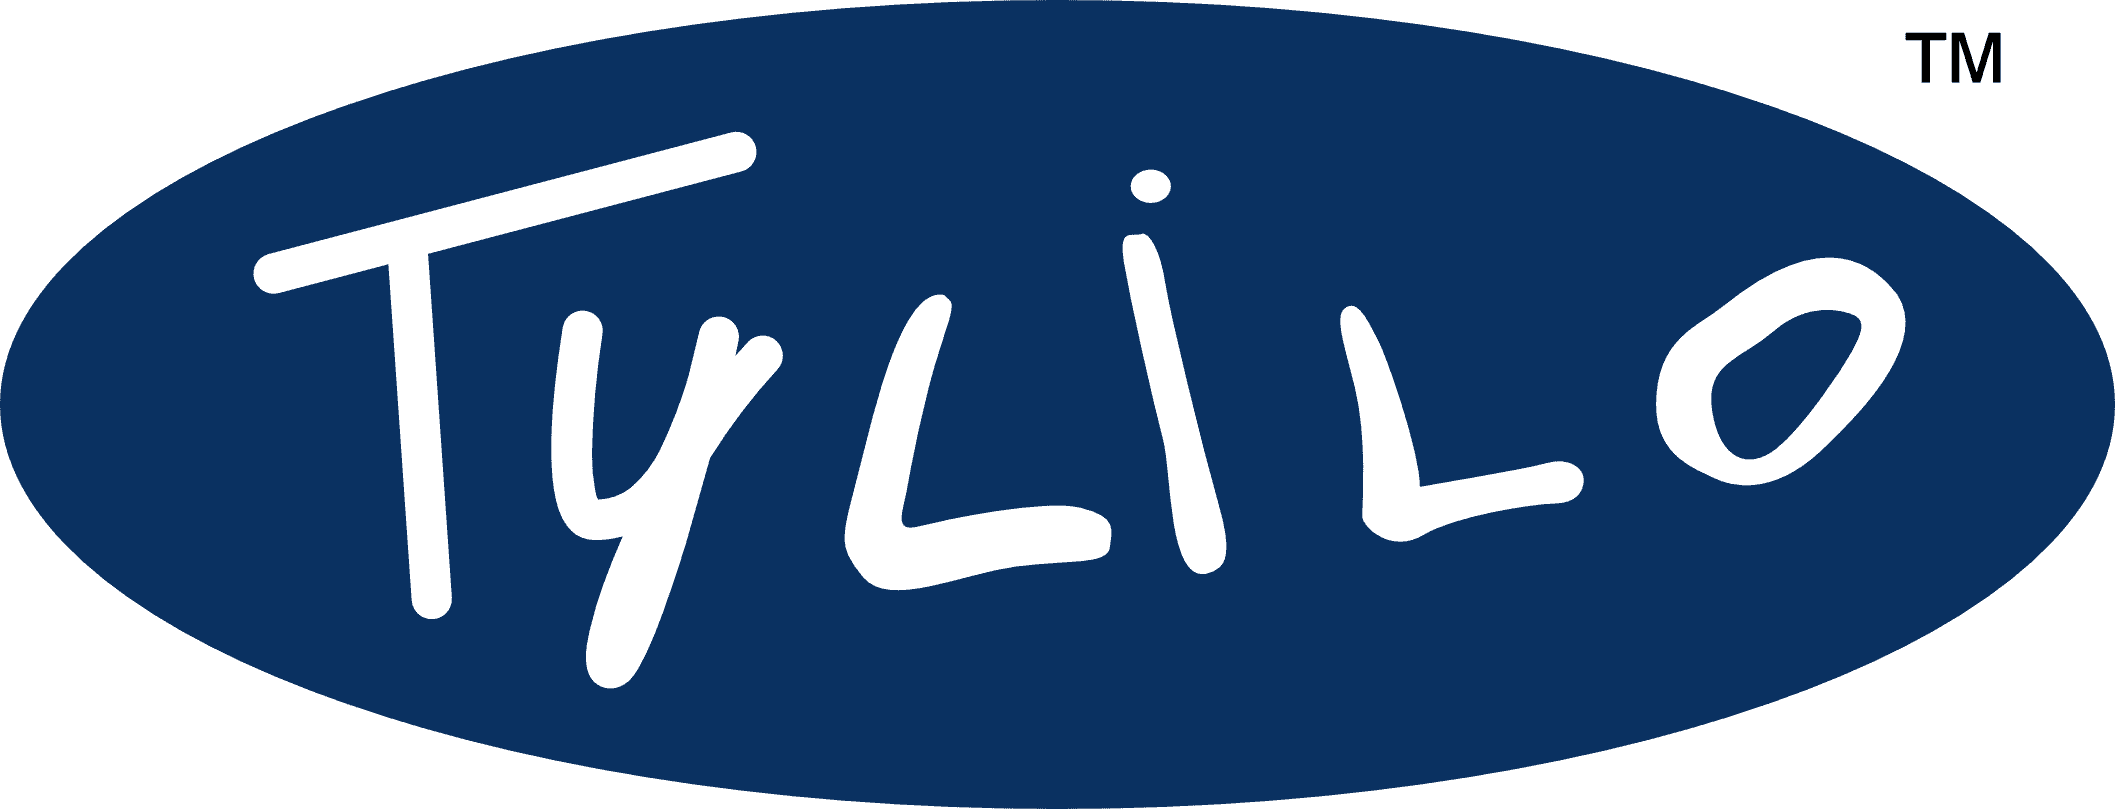 Tylilo Logo